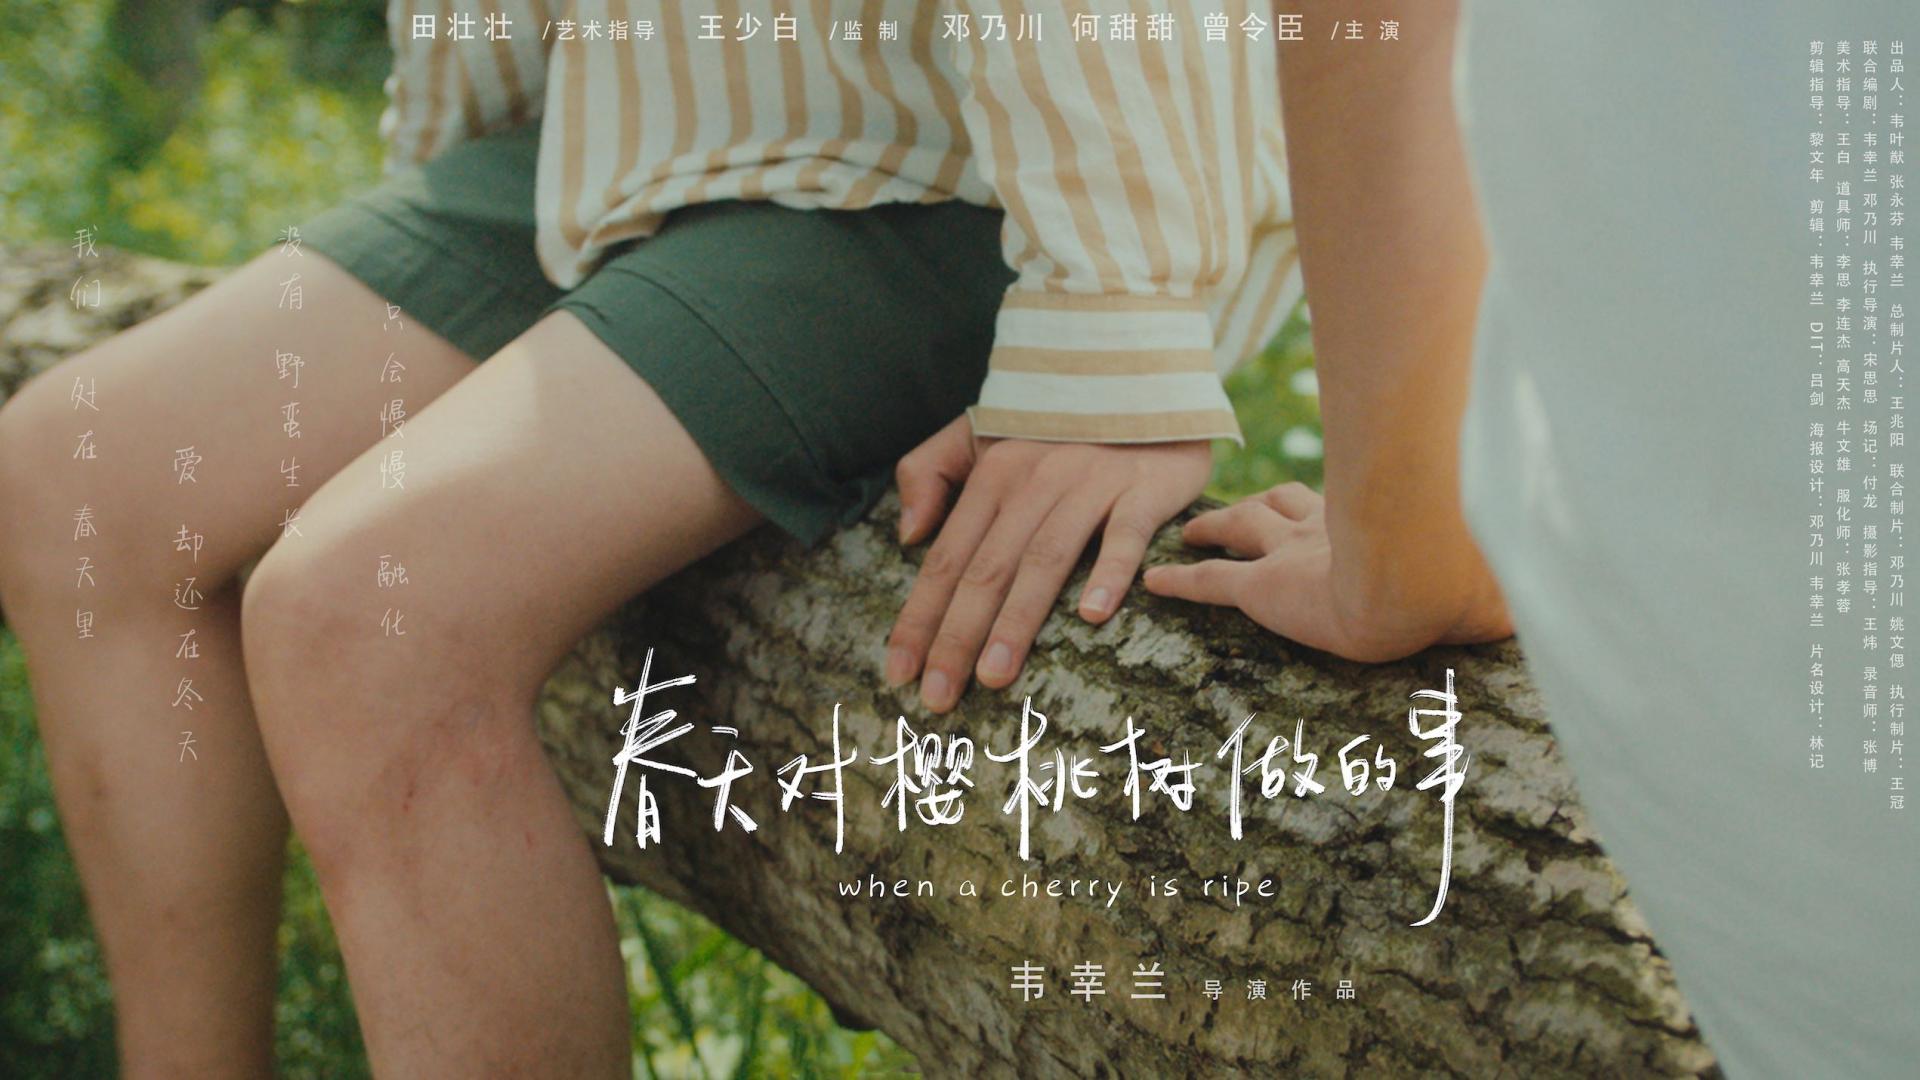 北京电影学院第八届导演奖入围作品《春天对樱桃树做的事》